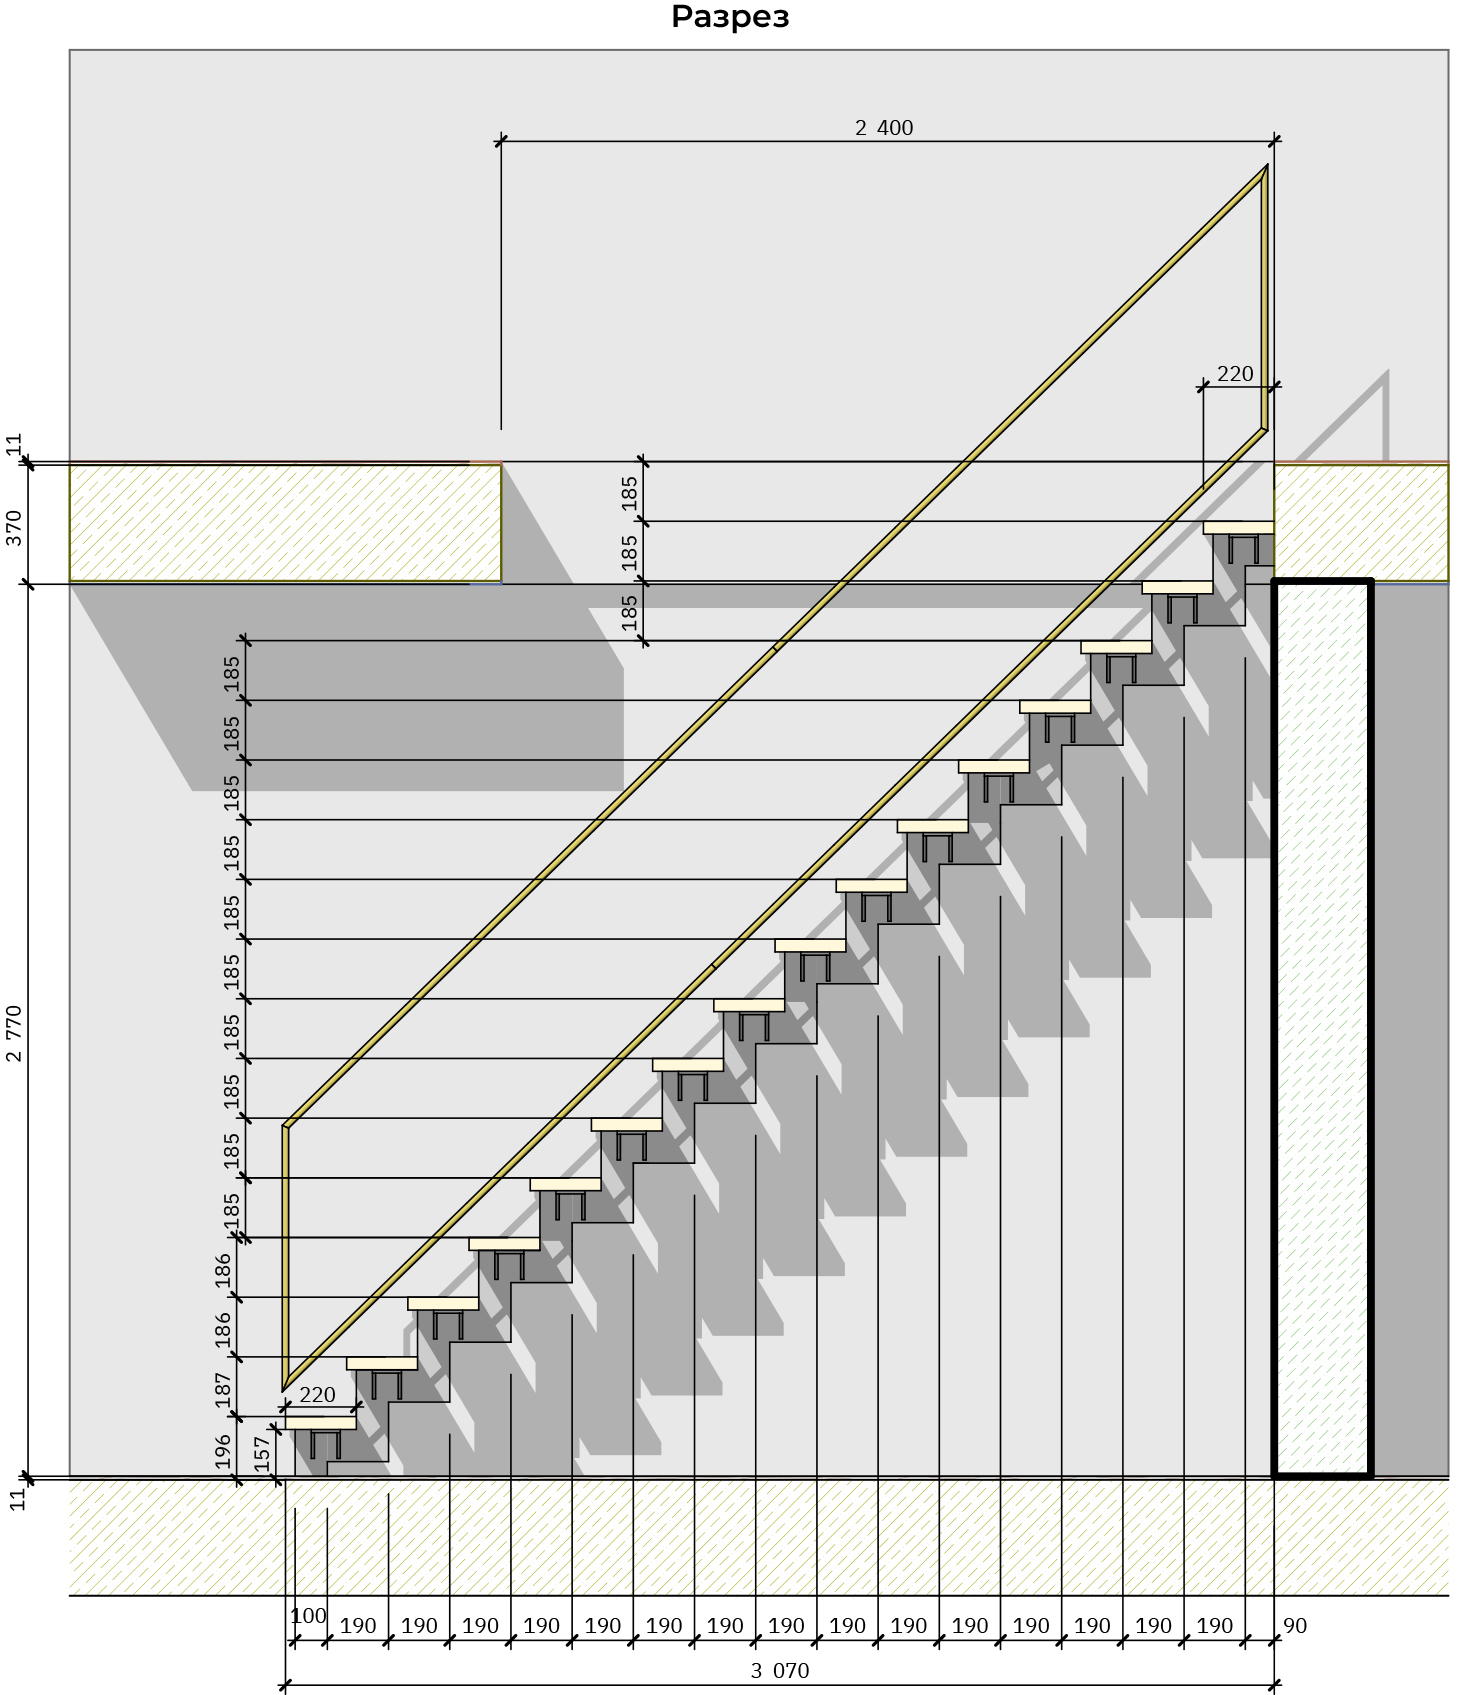 Лестница длиной 5 метров упирается одним концом